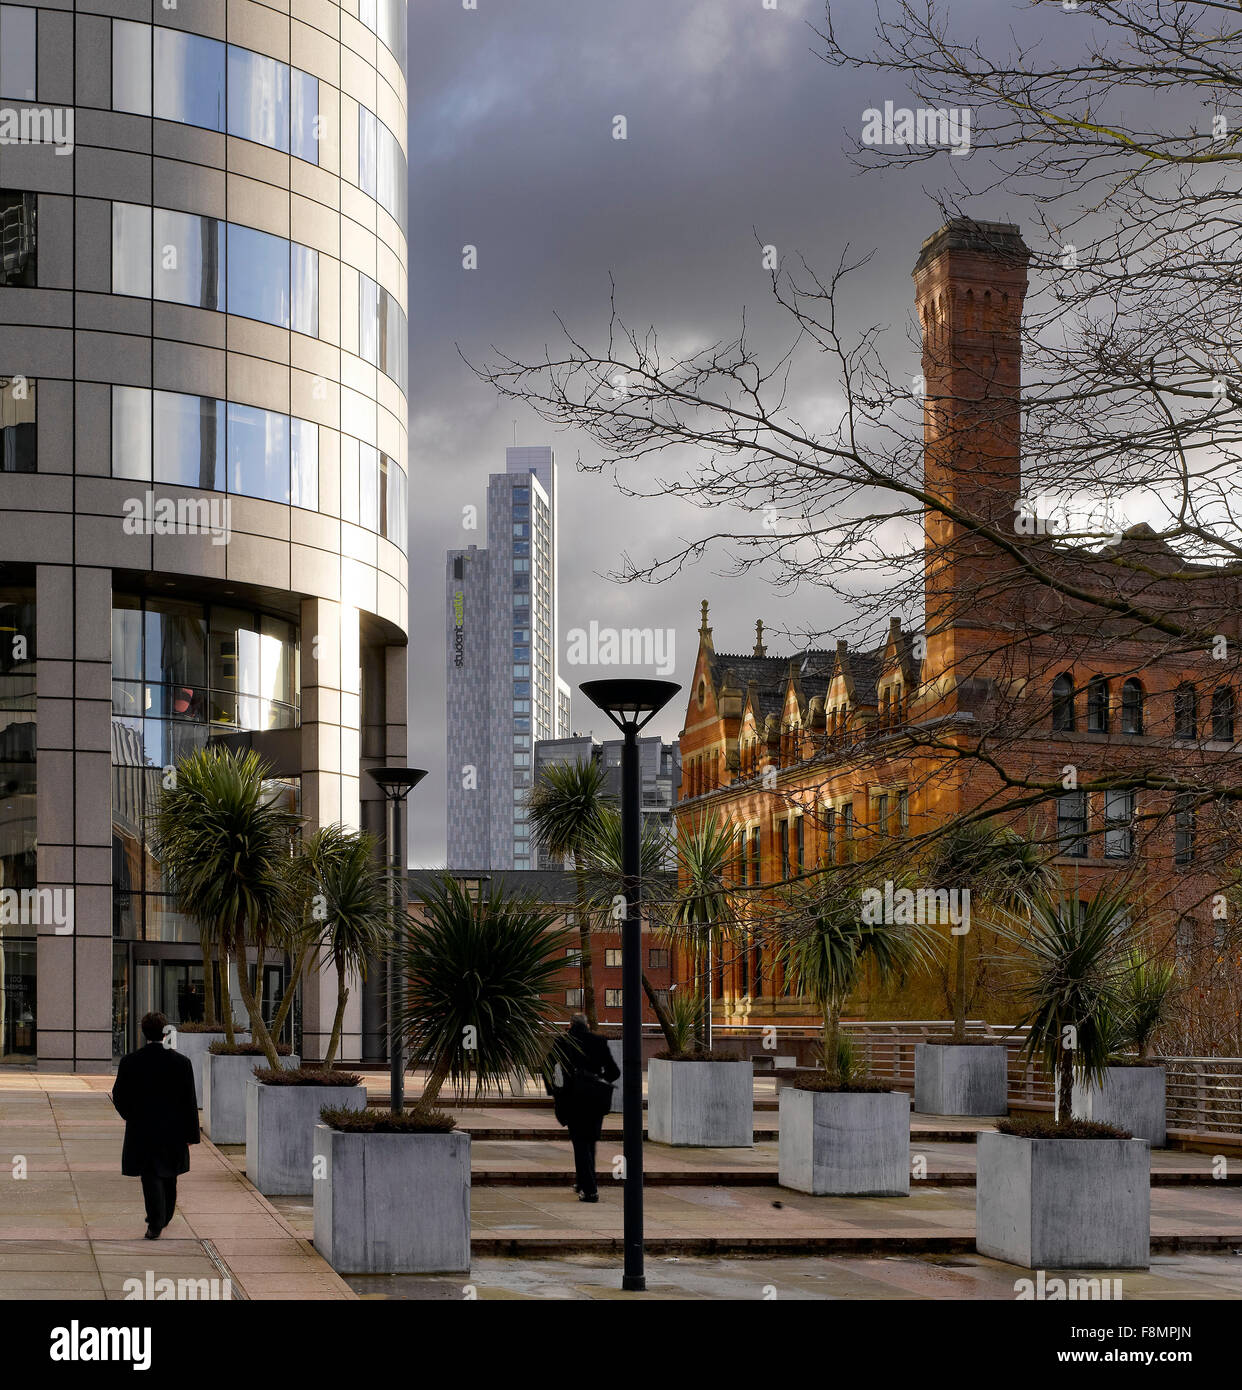 Château d'étudiants, Manchester. Logement des étudiants. Vue d'un gratte-ciel. Contraste des styles architecturaux. Banque D'Images